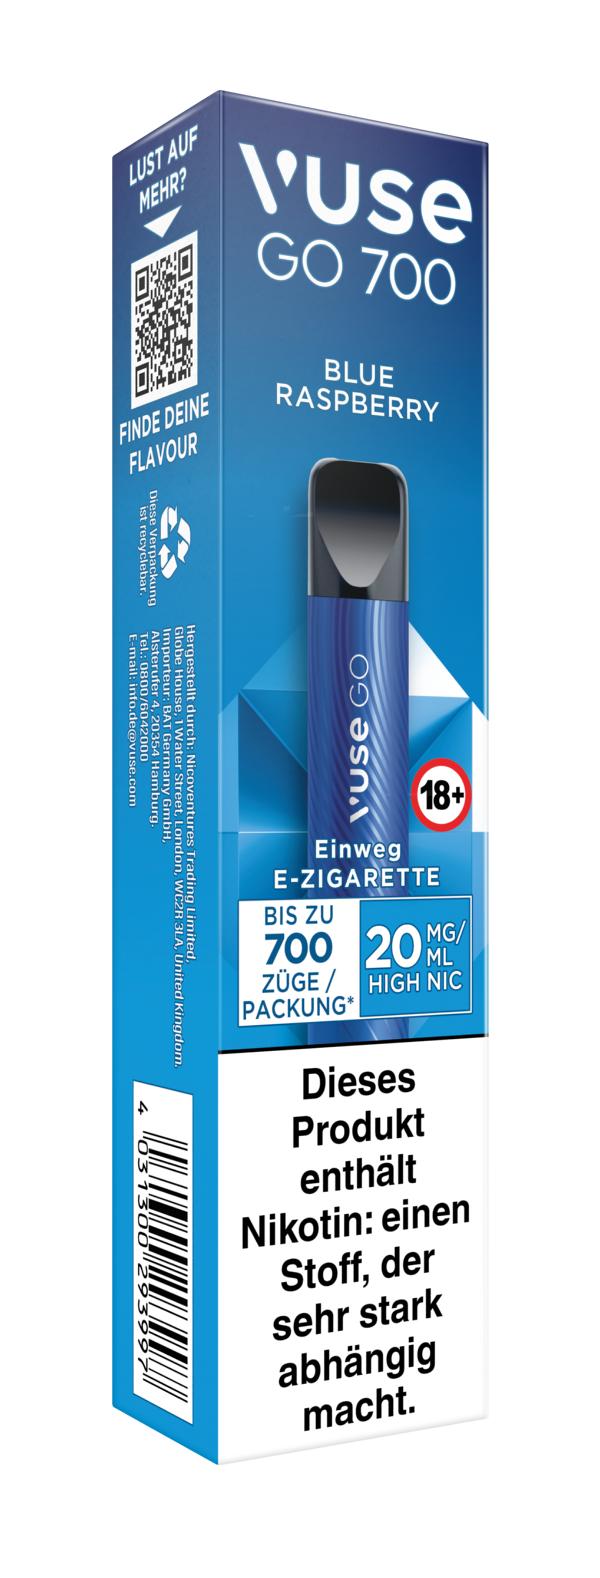 Vuse Go 700 Einweg E-Zigarette Blue Raspberry 20mg/ml Nikotin